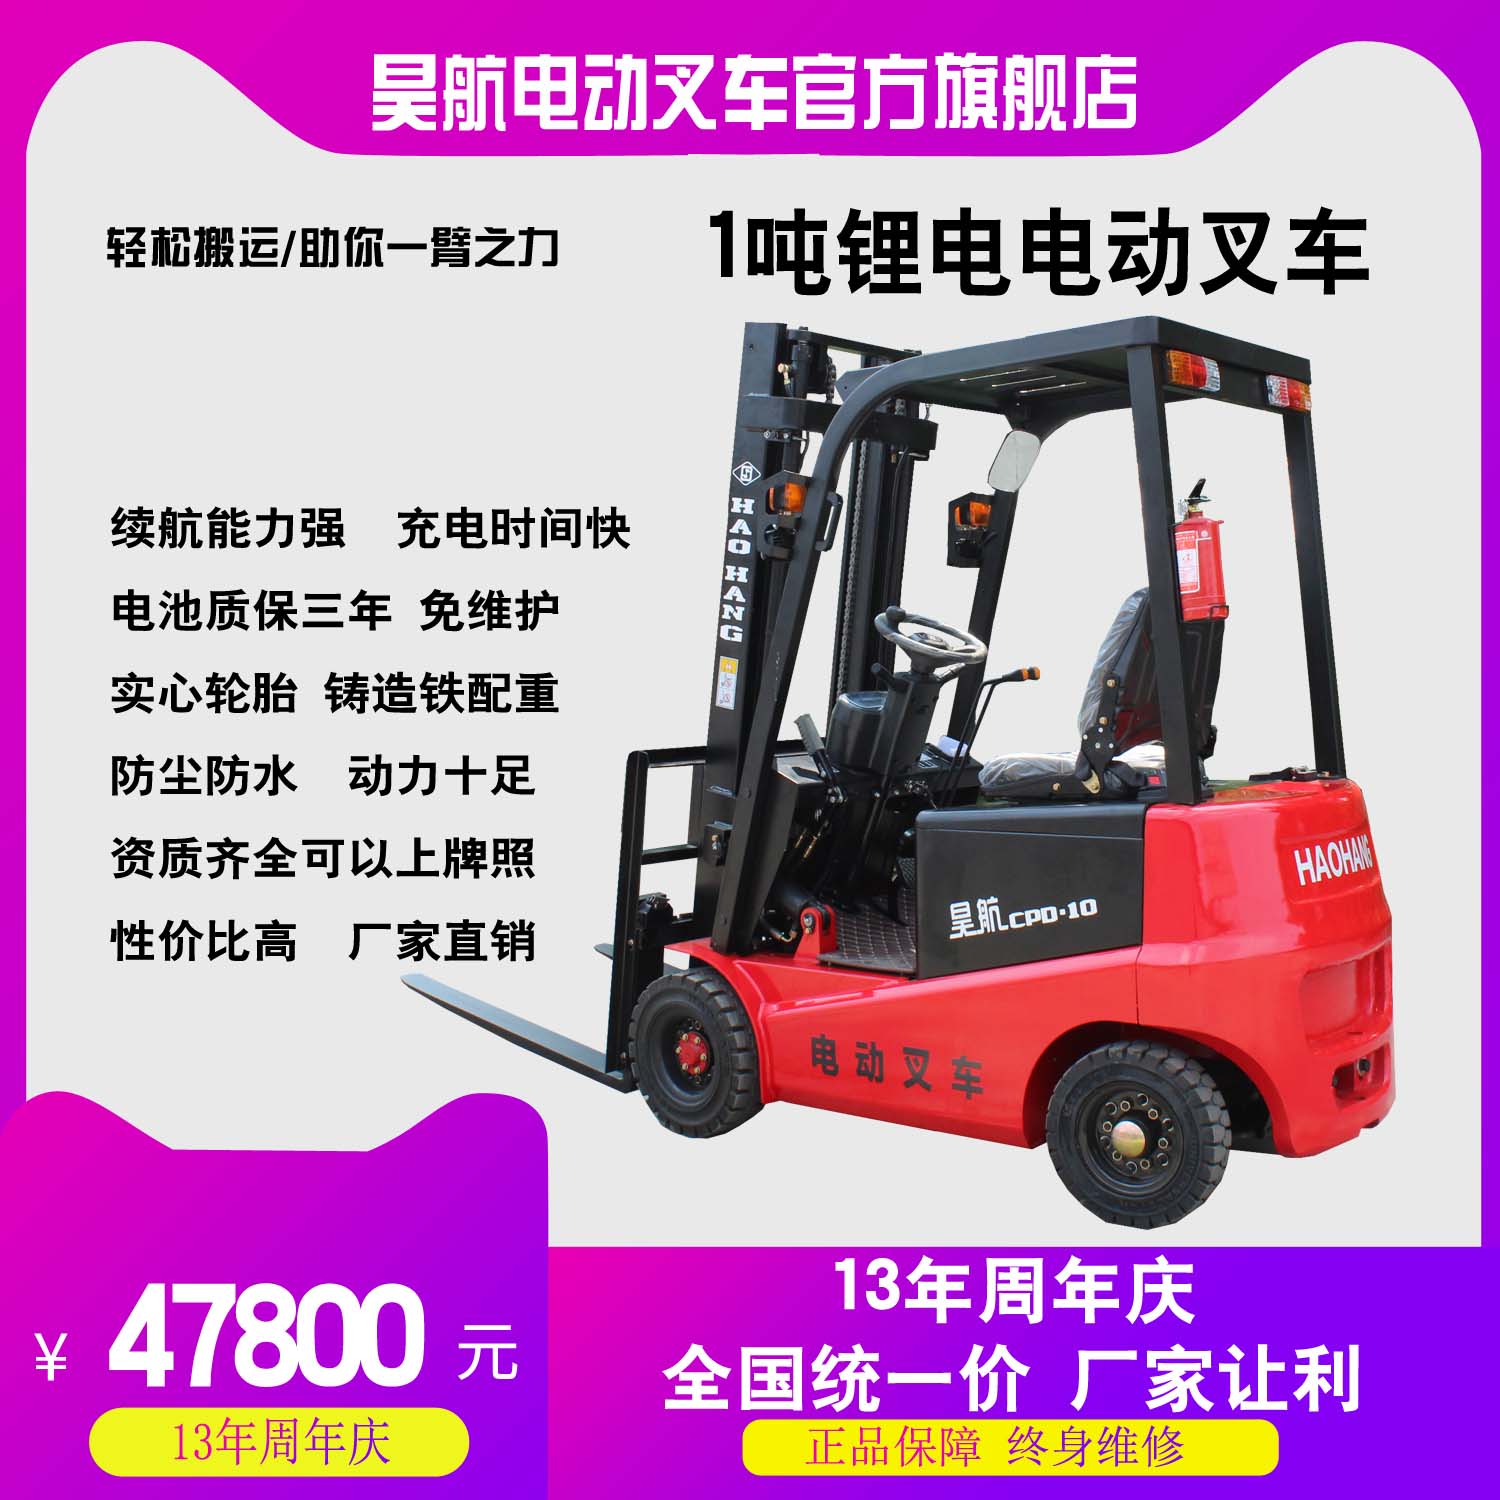 昊航锂电电动叉车系列产品全新上市